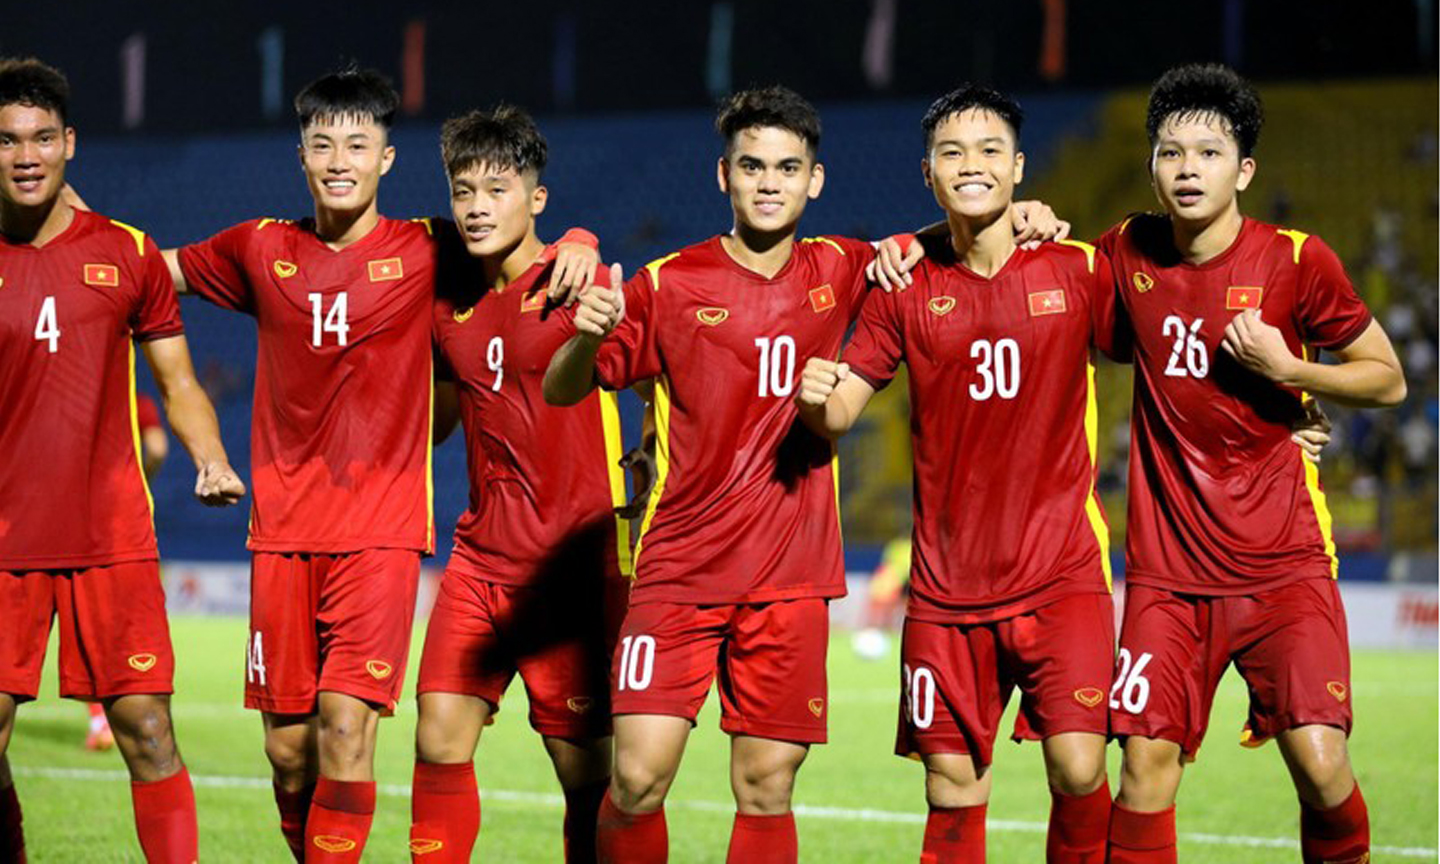 Với 2 chiến thắng liên tiếp, U19 Việt Nam chắc chắn giành quyền chơi trận chung kết. (Ảnh: VFF)